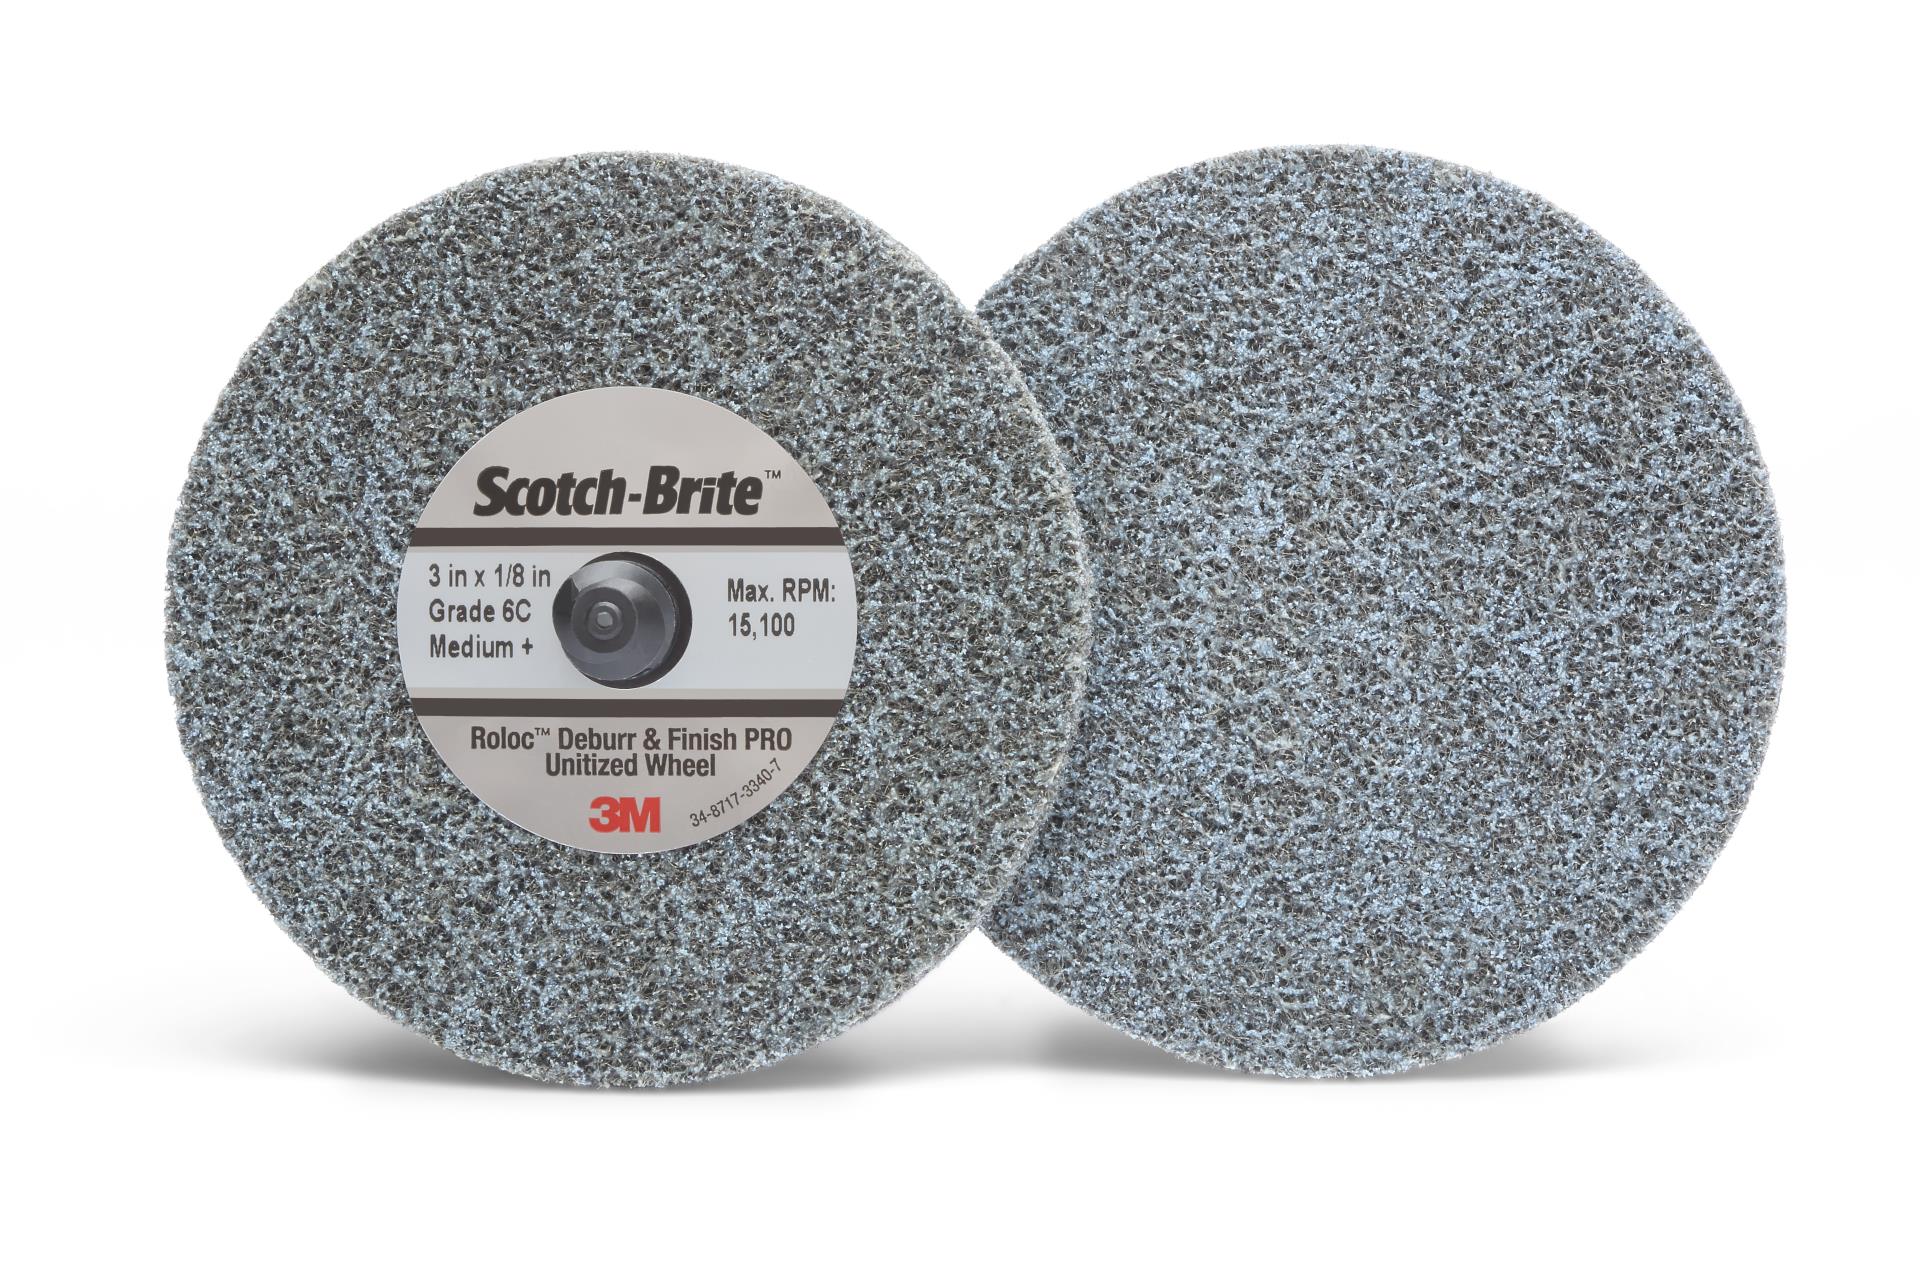 Scotch-Brite Roloc Clean and Finish Disc TS 2 in x NH S ULF SPR 019670A 3M 